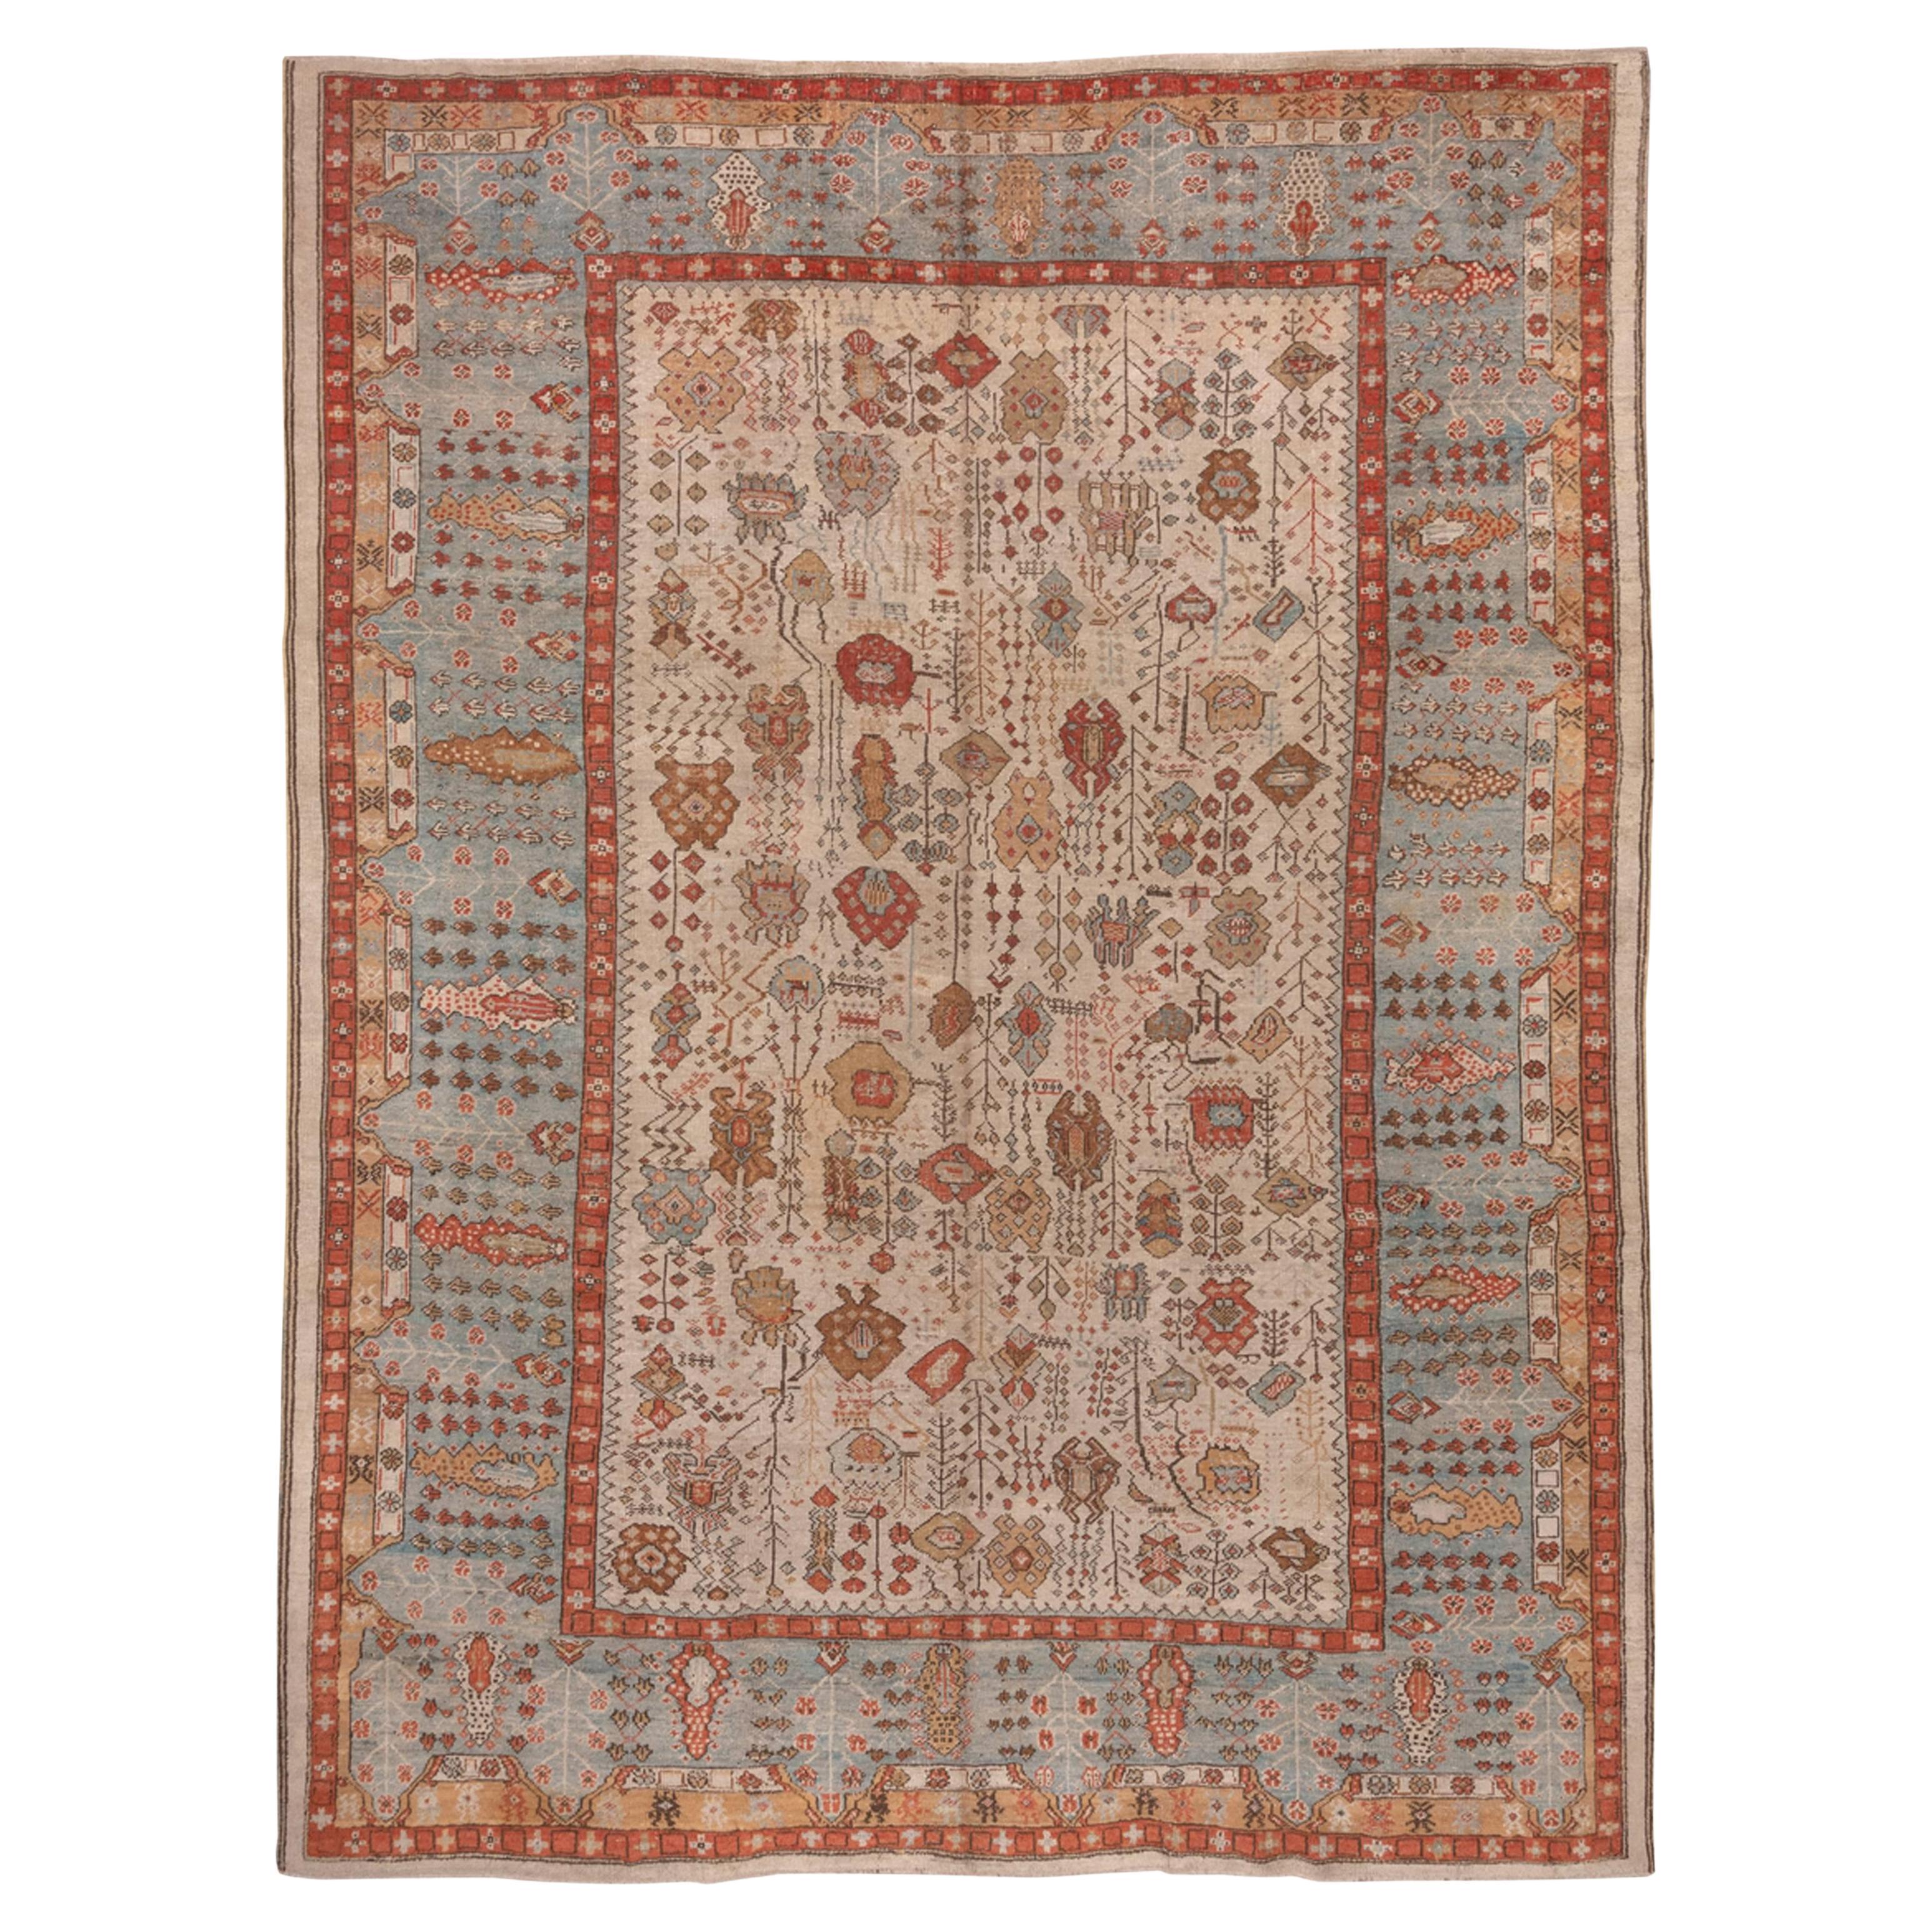 Late 19th Century Antique Ghiordes Carpet, circa 1880s